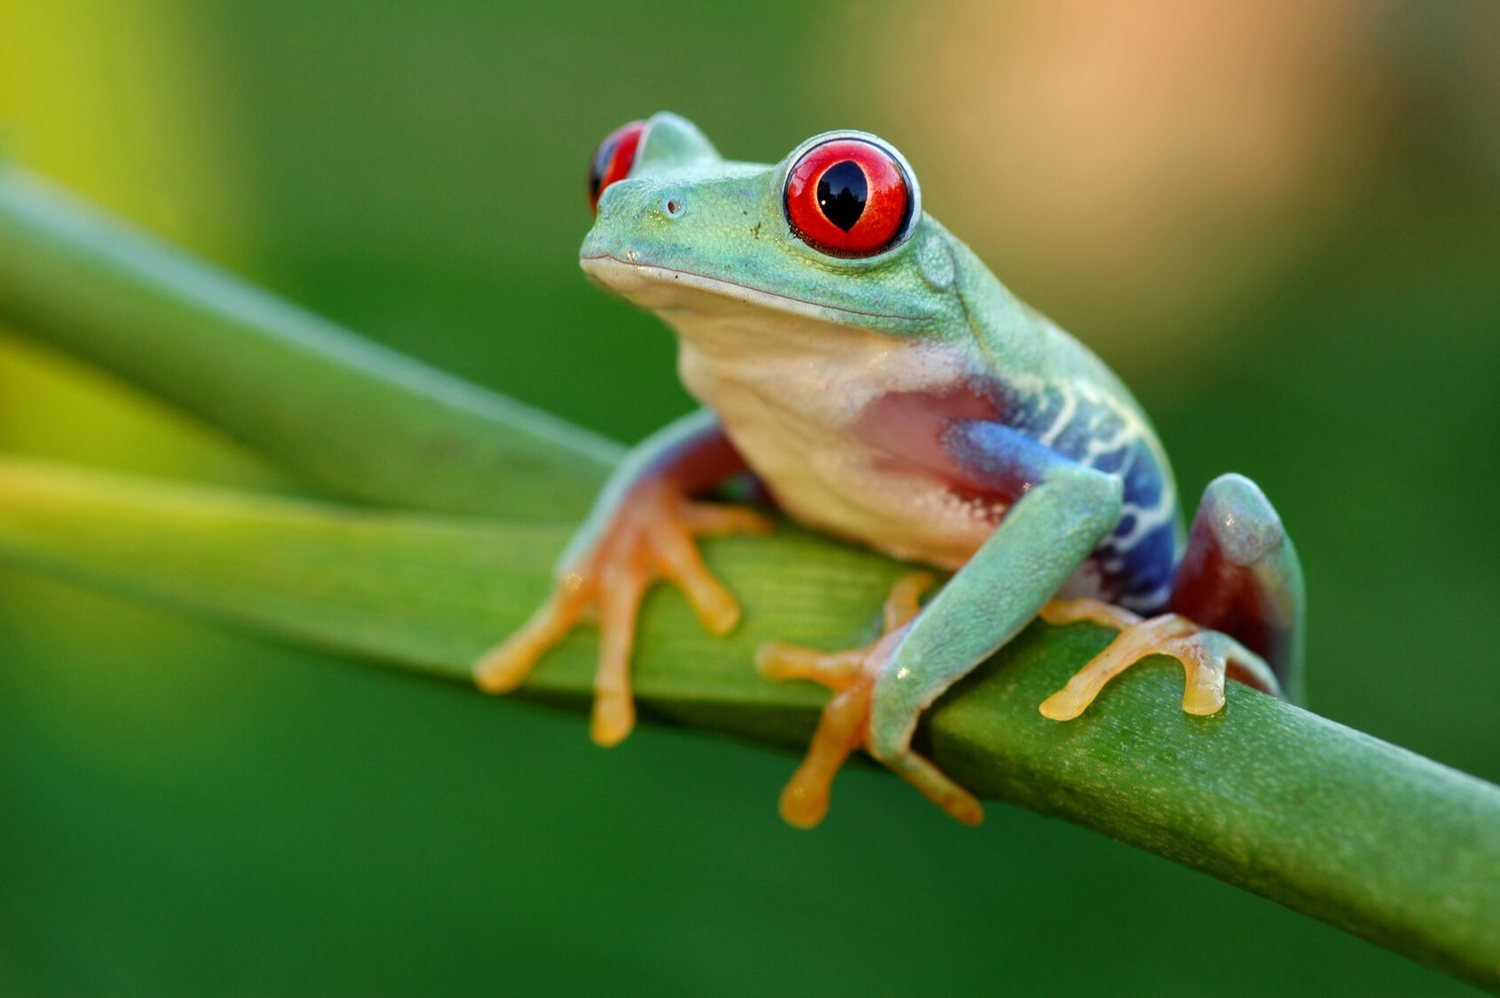 Javan tree frogs amphibians